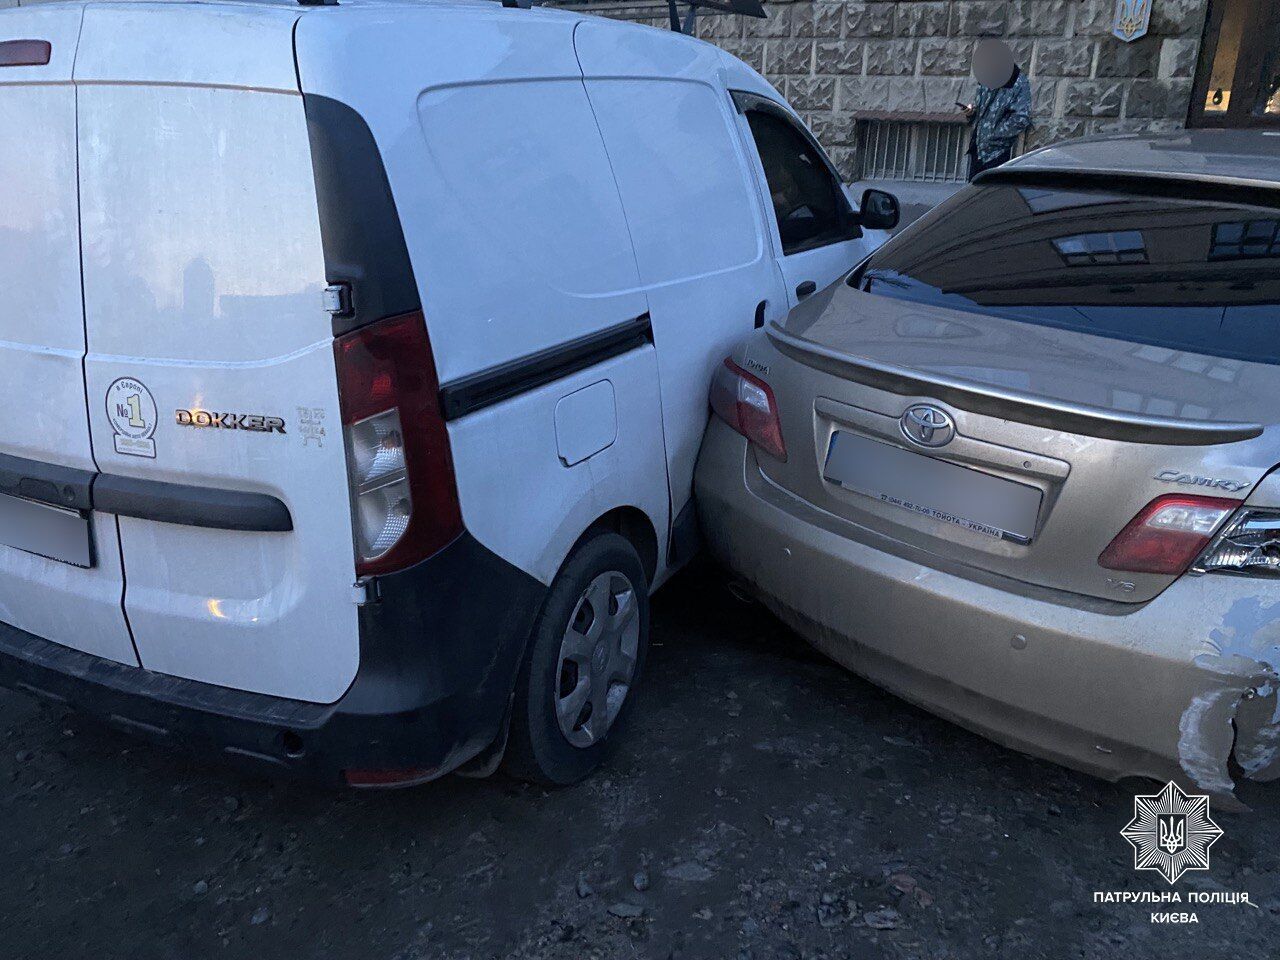 У Києві охоронець СТО взяв покататись чужу машину та спровокував ДТП. Фото